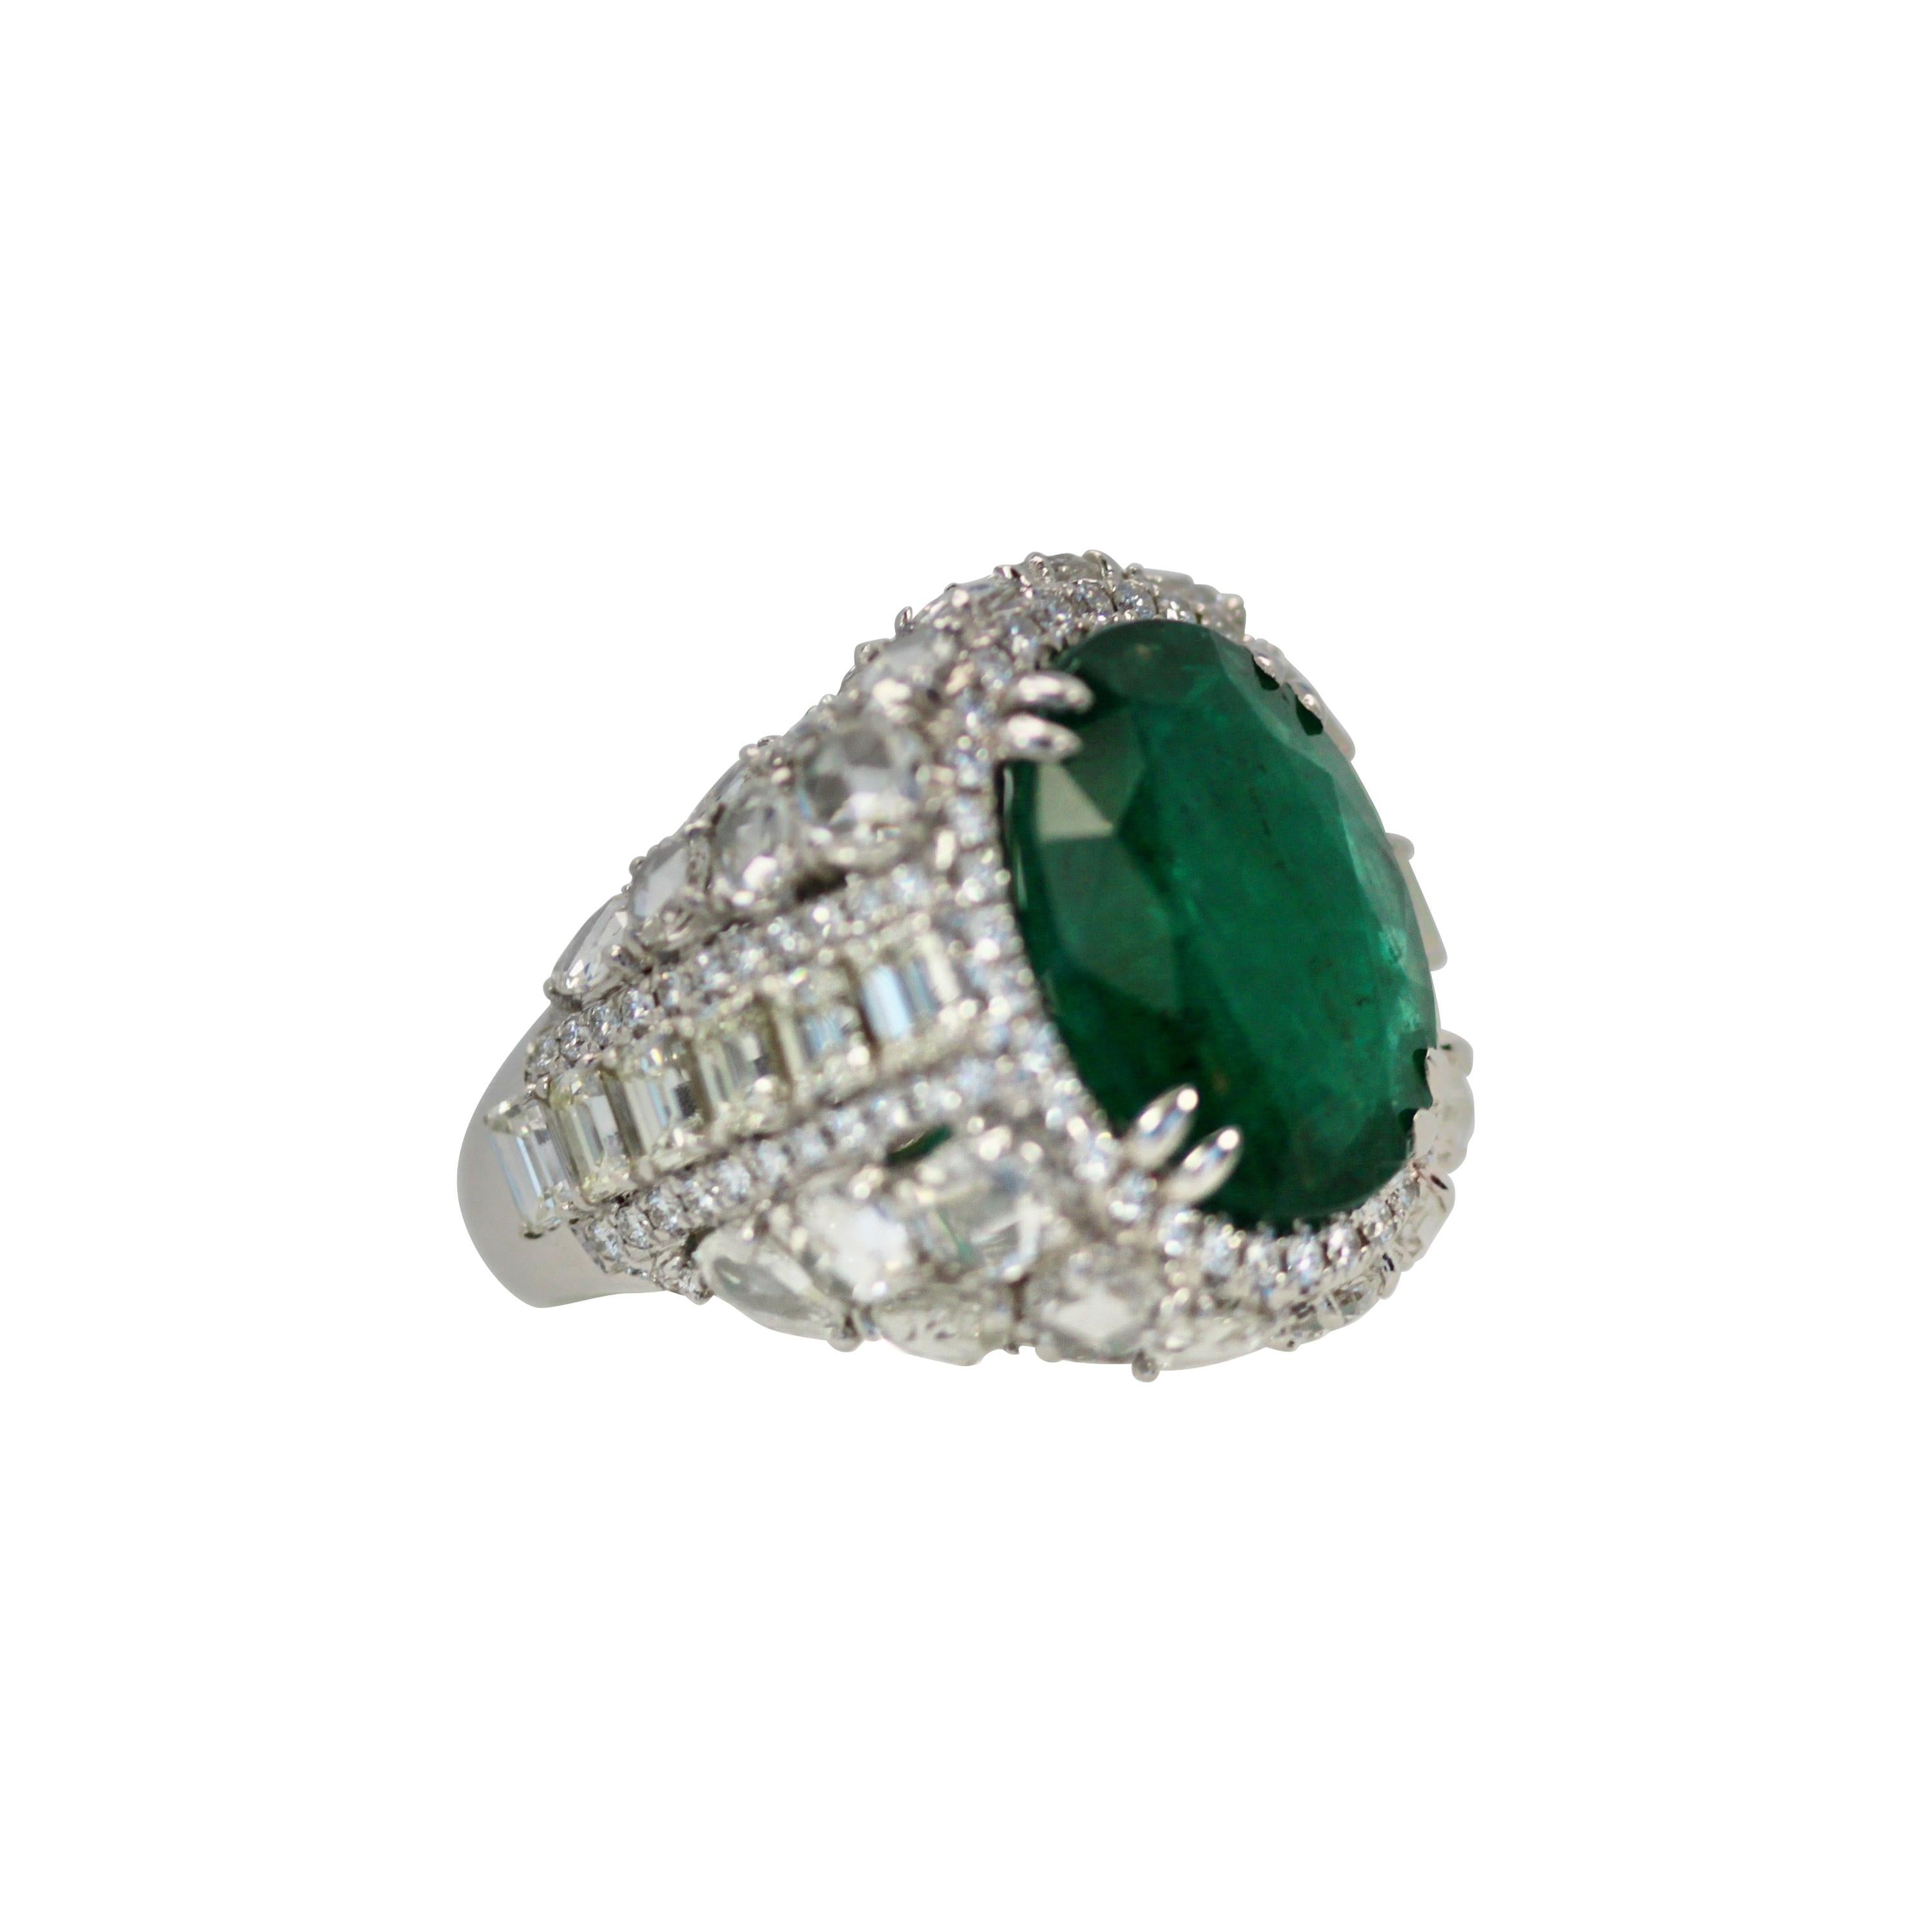 Oval Emerald 12.25 Carat Diamond Surround 8.85 Carat Total Weight 21.10 Carat